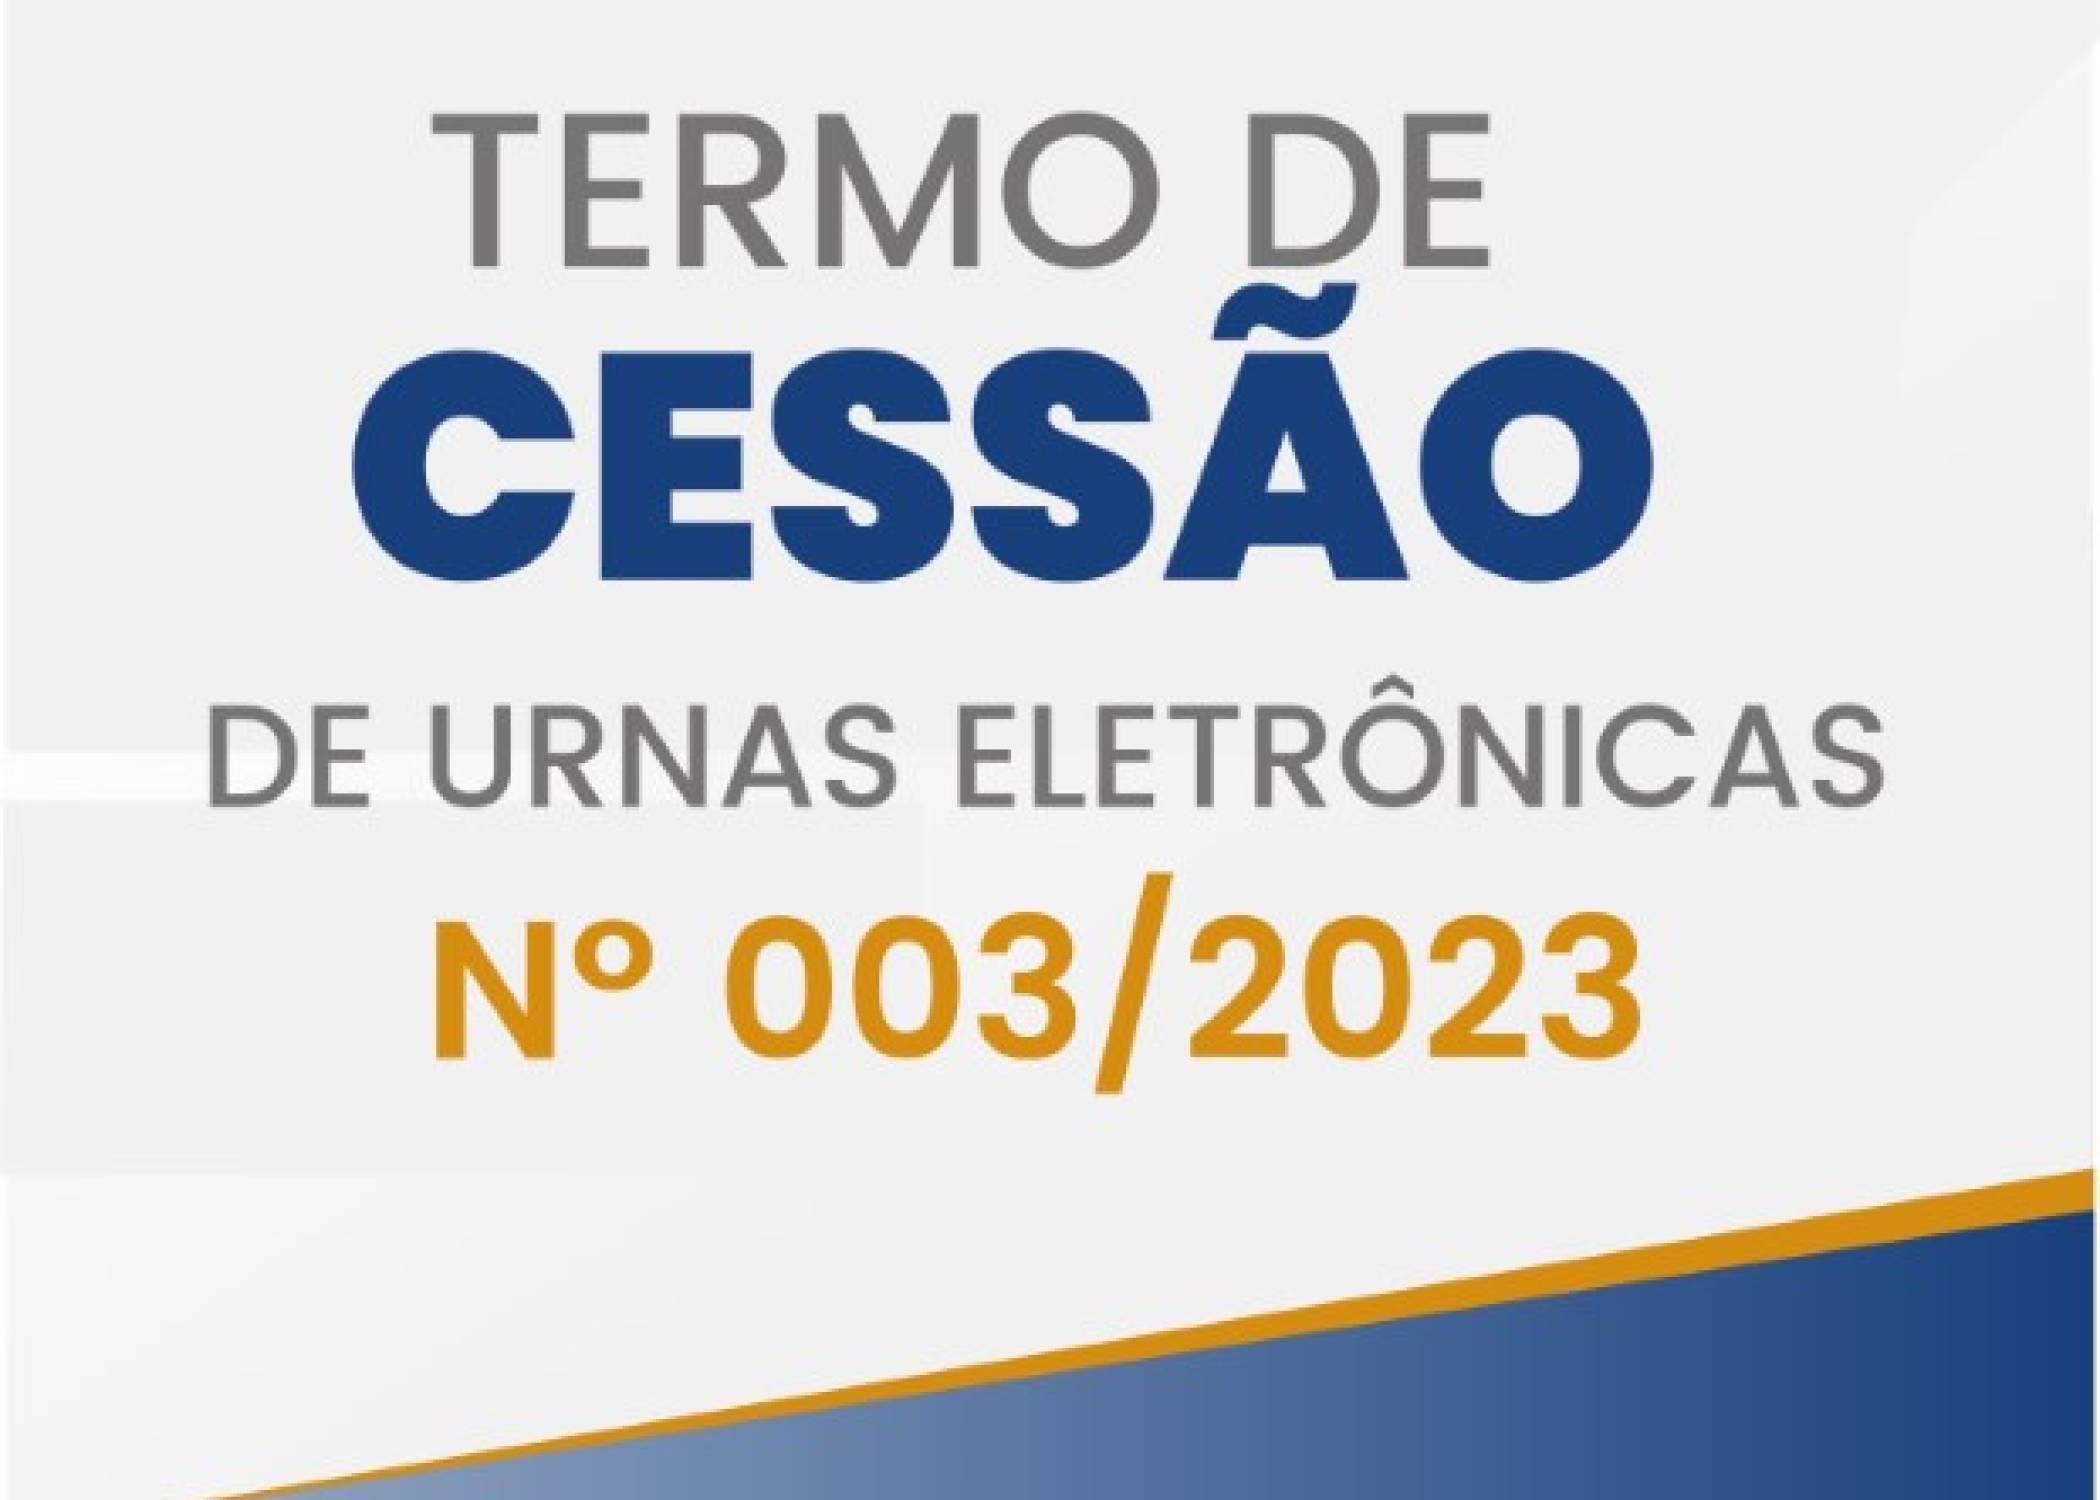 Termo de Cessão de Urnas Eletrônicas Nº 003/2023